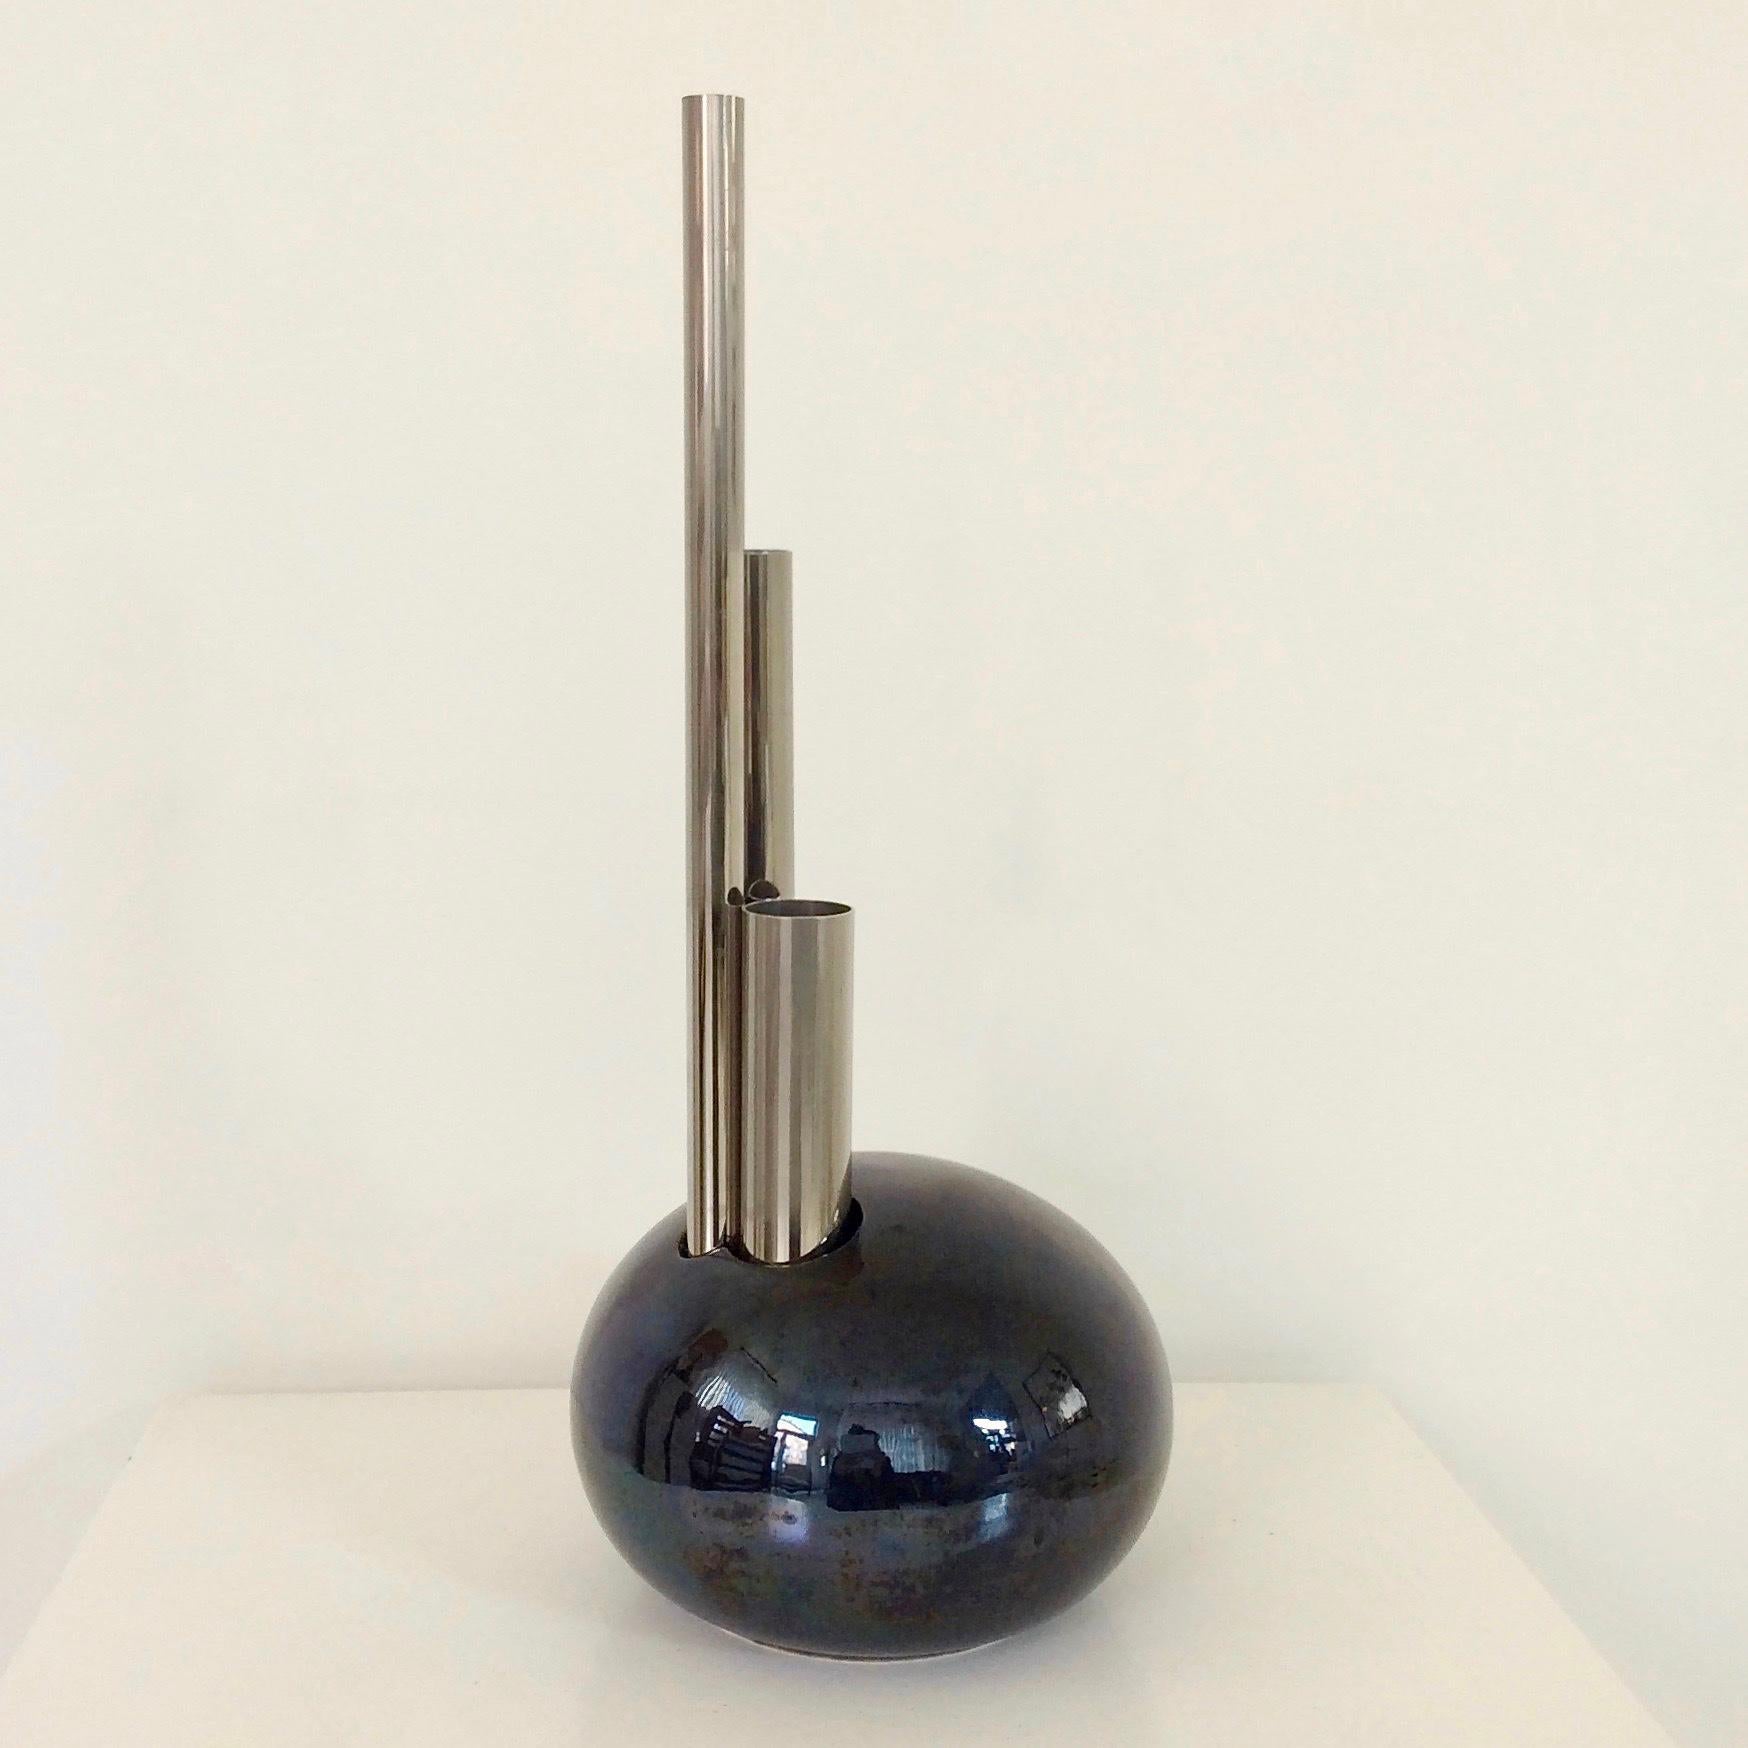 Schöne dekorative postmoderne Vase, um 1980, Italien.
Runde schwarz glasierte Keramik, drei vernickelte Metallrohre.
Abmessungen: 43 cm H, 18 cm Durchmesser.
Guter Originalzustand.
Alle Käufe sind durch unsere Käuferschutzgarantie abgedeckt.
Dieser